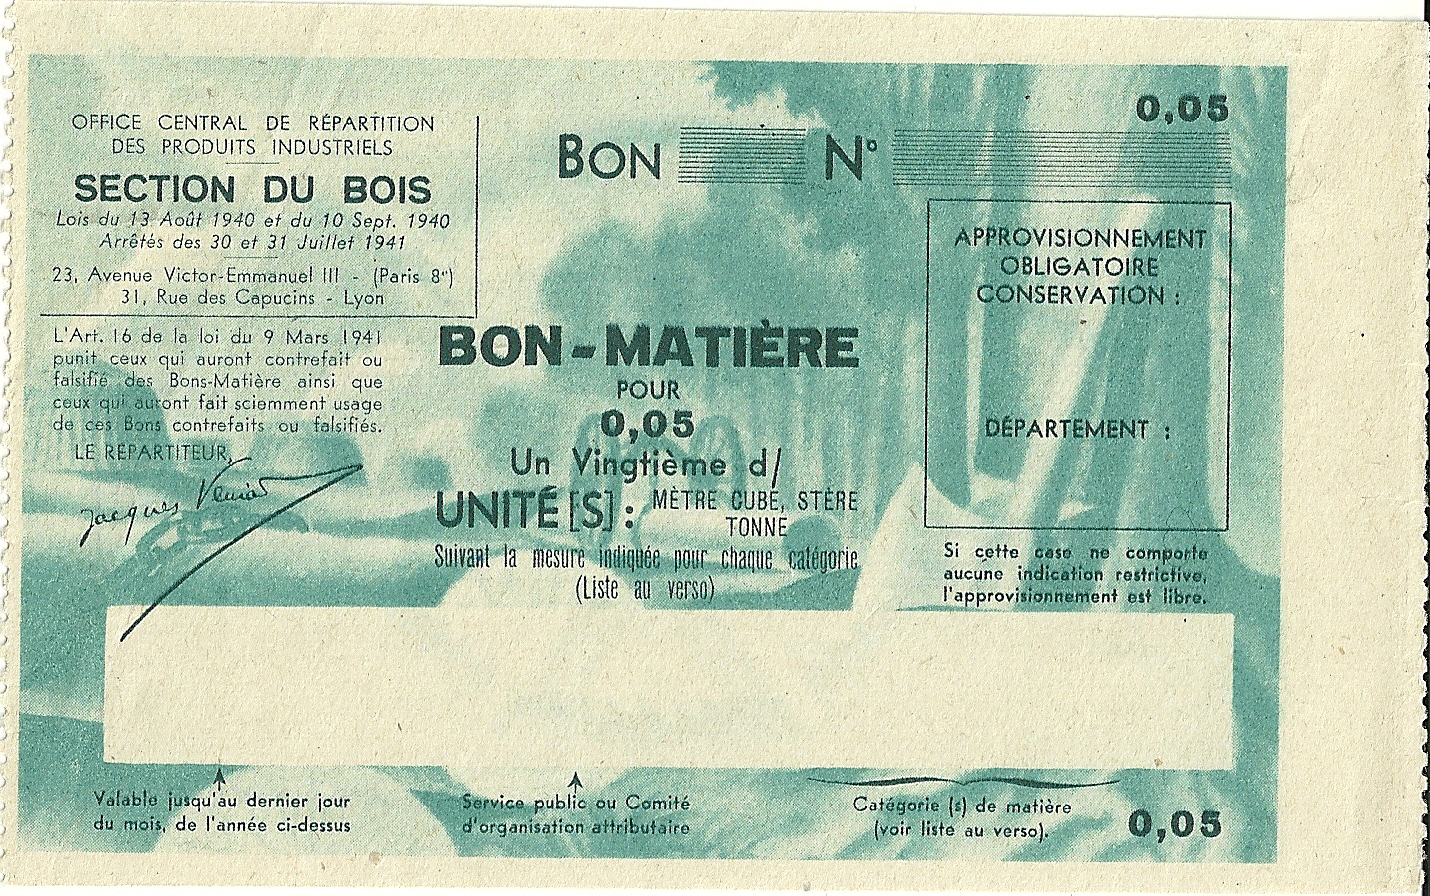 SECTION DU BOIS - BON-MATIERE POUR 0,05 Un Vingtième d'UNITE - S-NMR